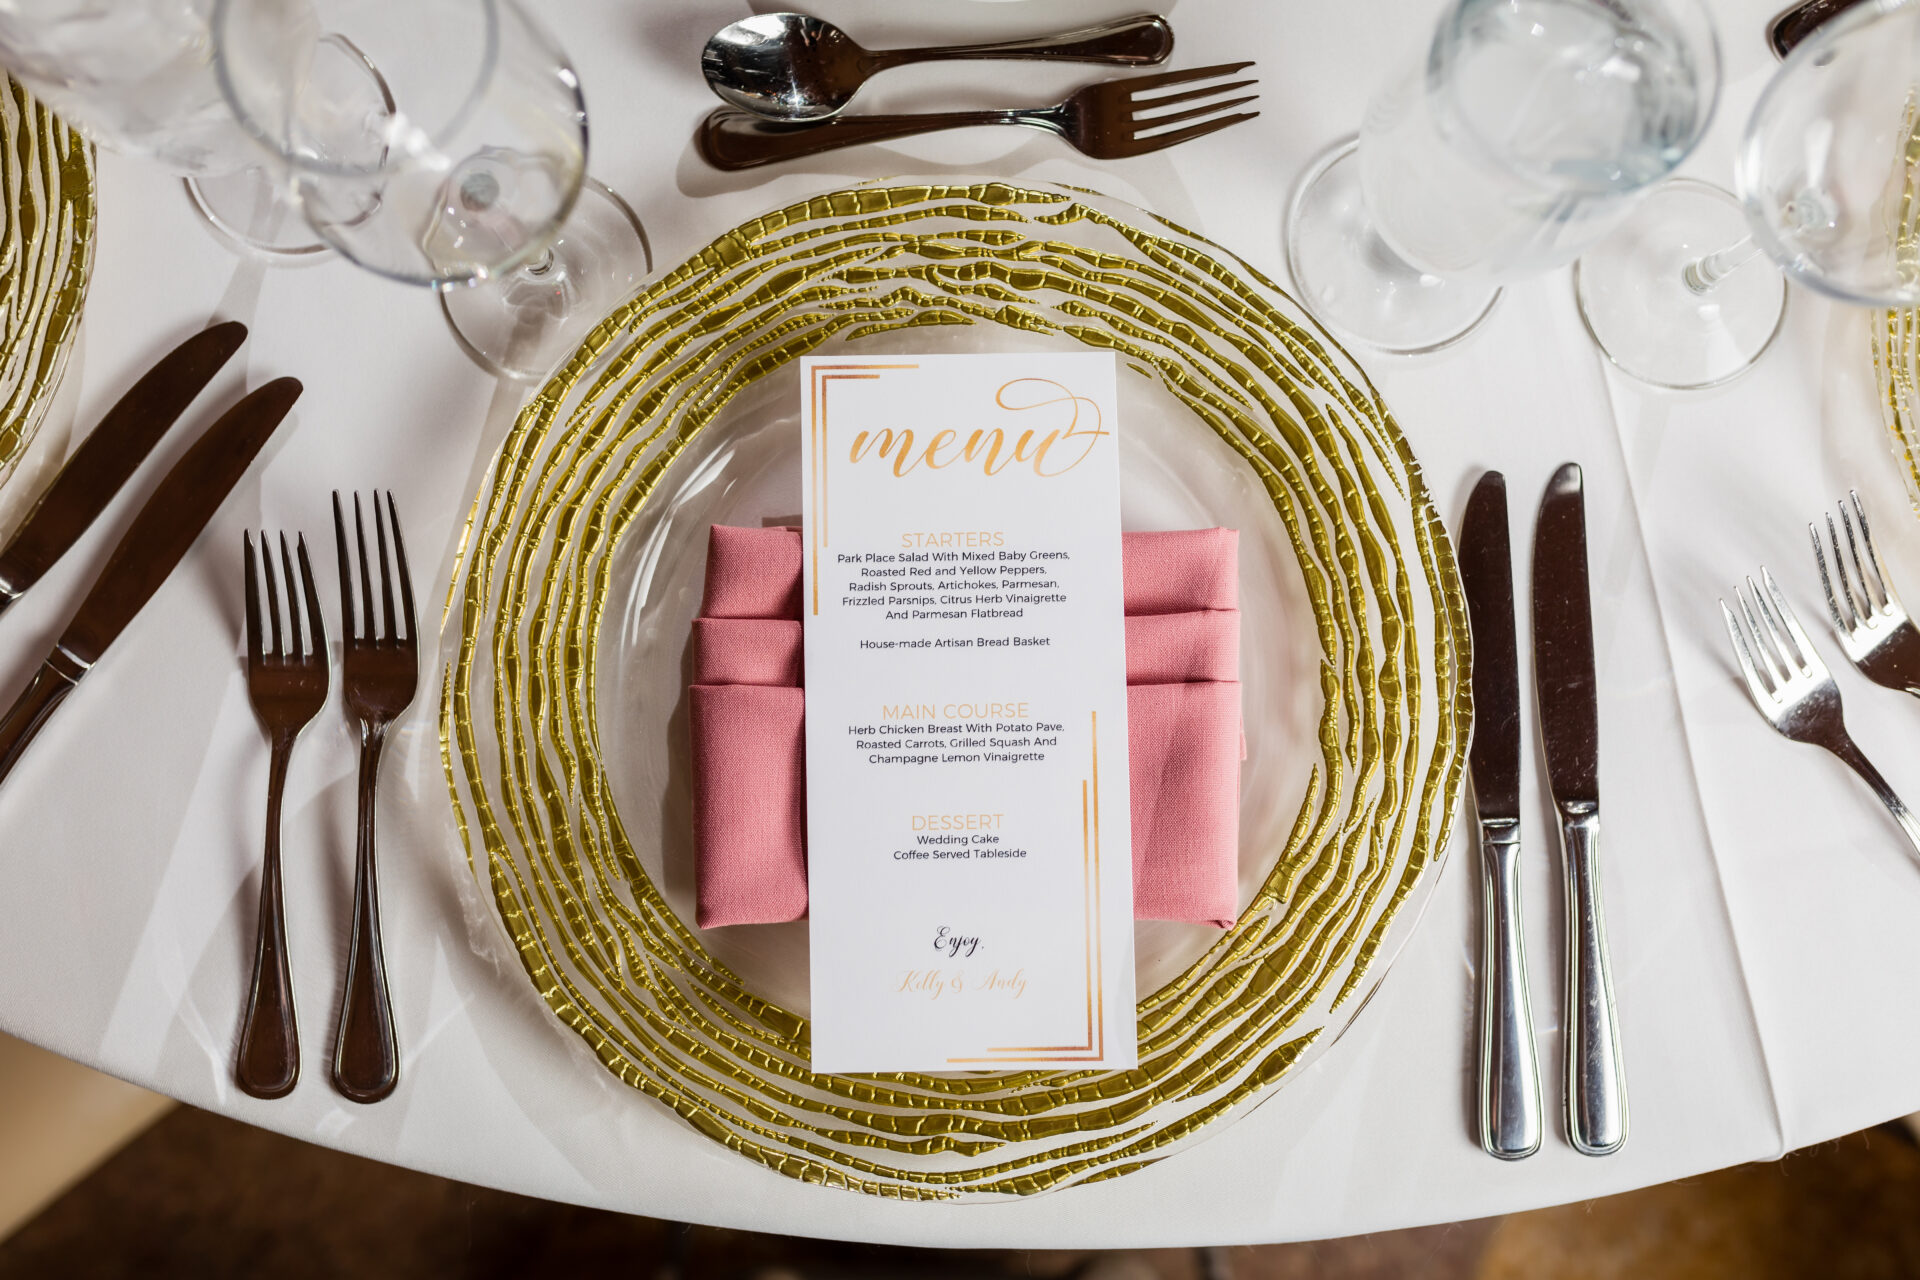 Wedding menu card atop a pink napkin and gold placemat